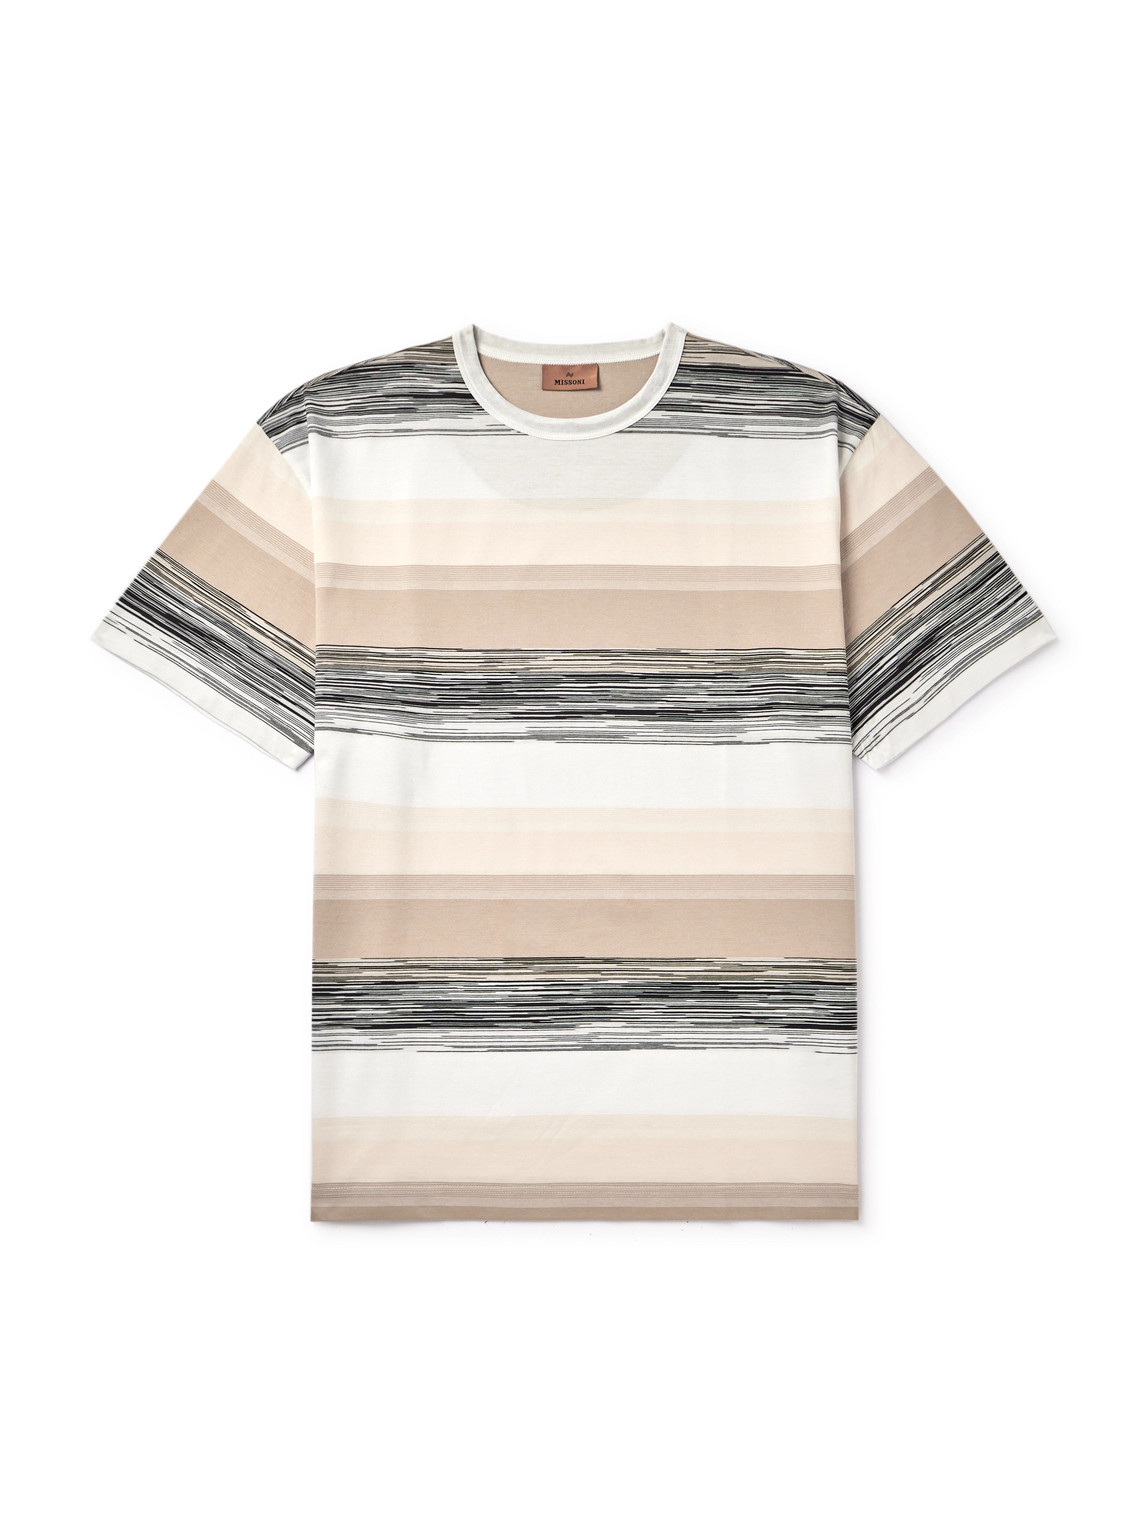 Missoni - Space-Dyed Cotton-Jersey T-Shirt - Men - Neutrals - XXL von Missoni